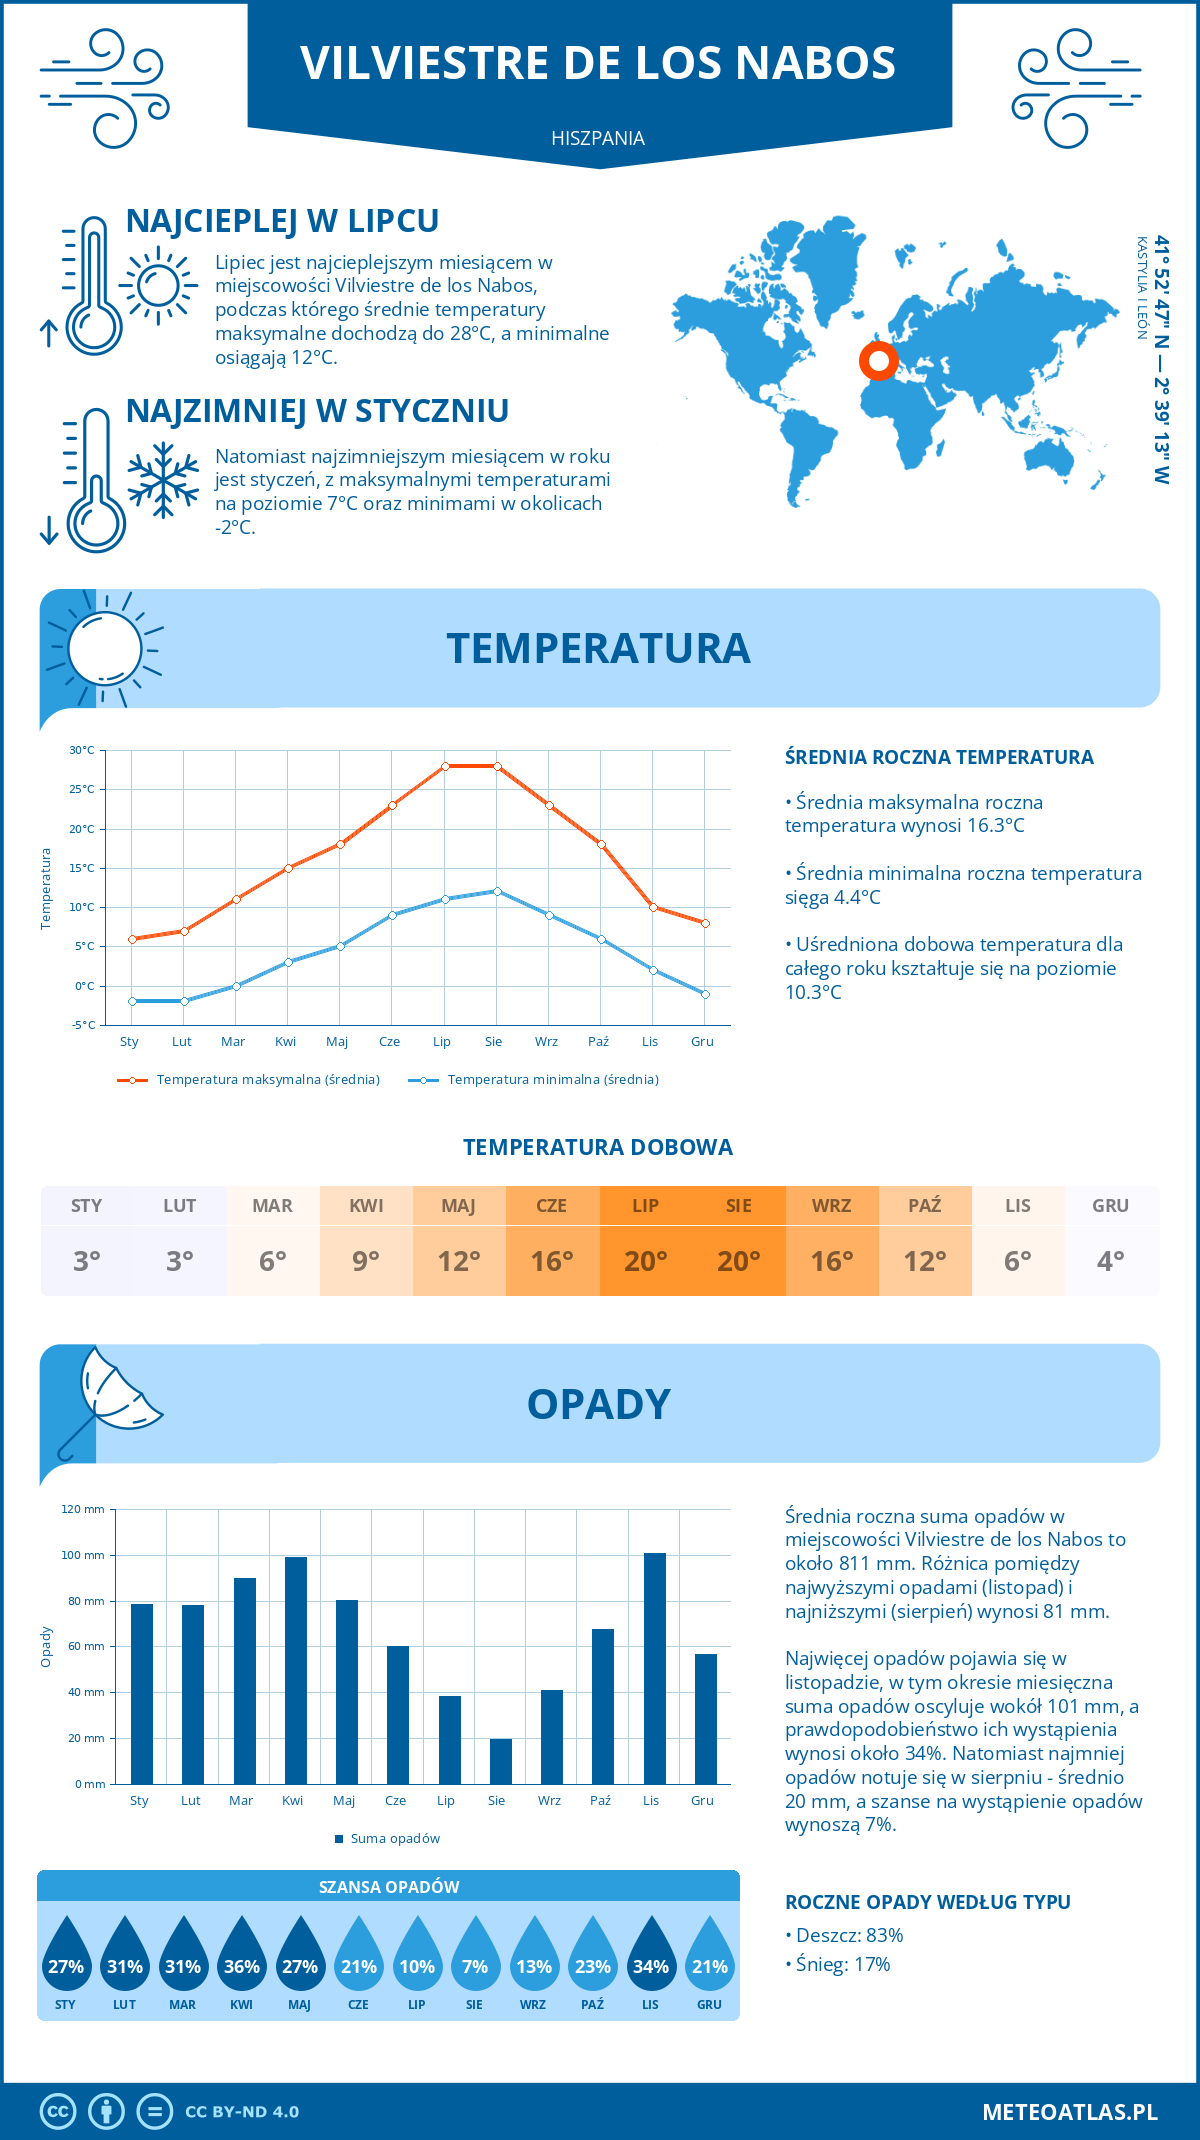 Pogoda Vilviestre de los Nabos (Hiszpania). Temperatura oraz opady.